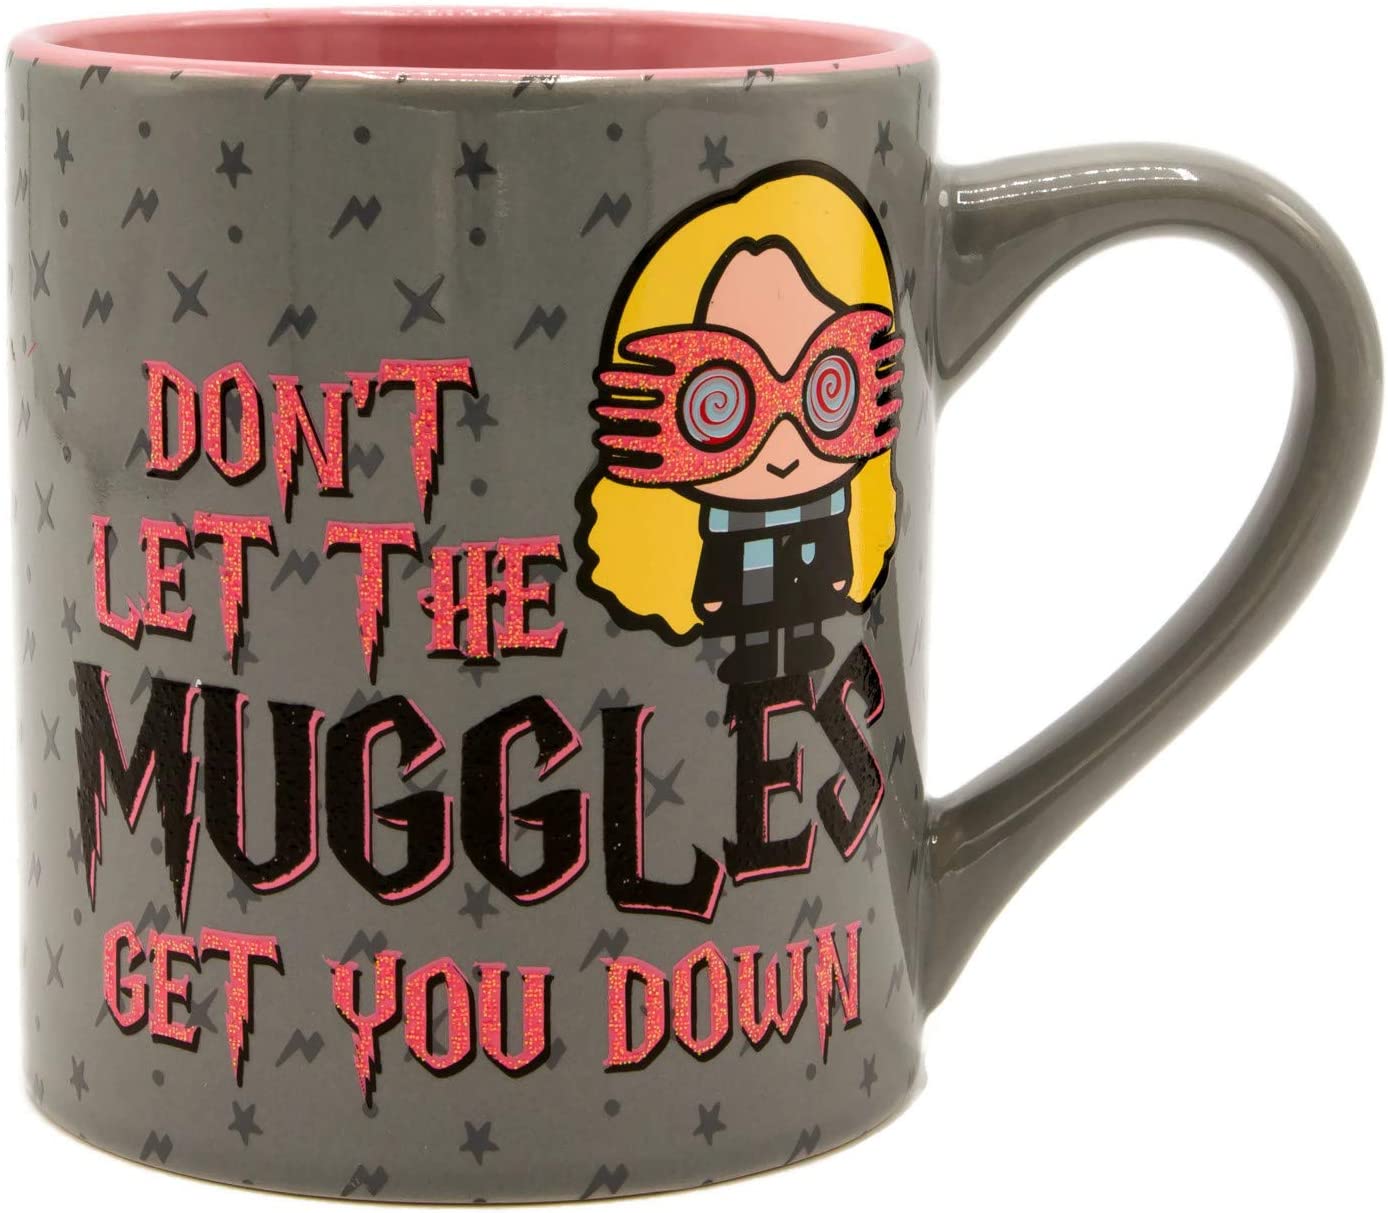 Luna Lovegood "Don't Let the Muggles Get You Down" (Harry Potter) 14oz. Ceramic Mug